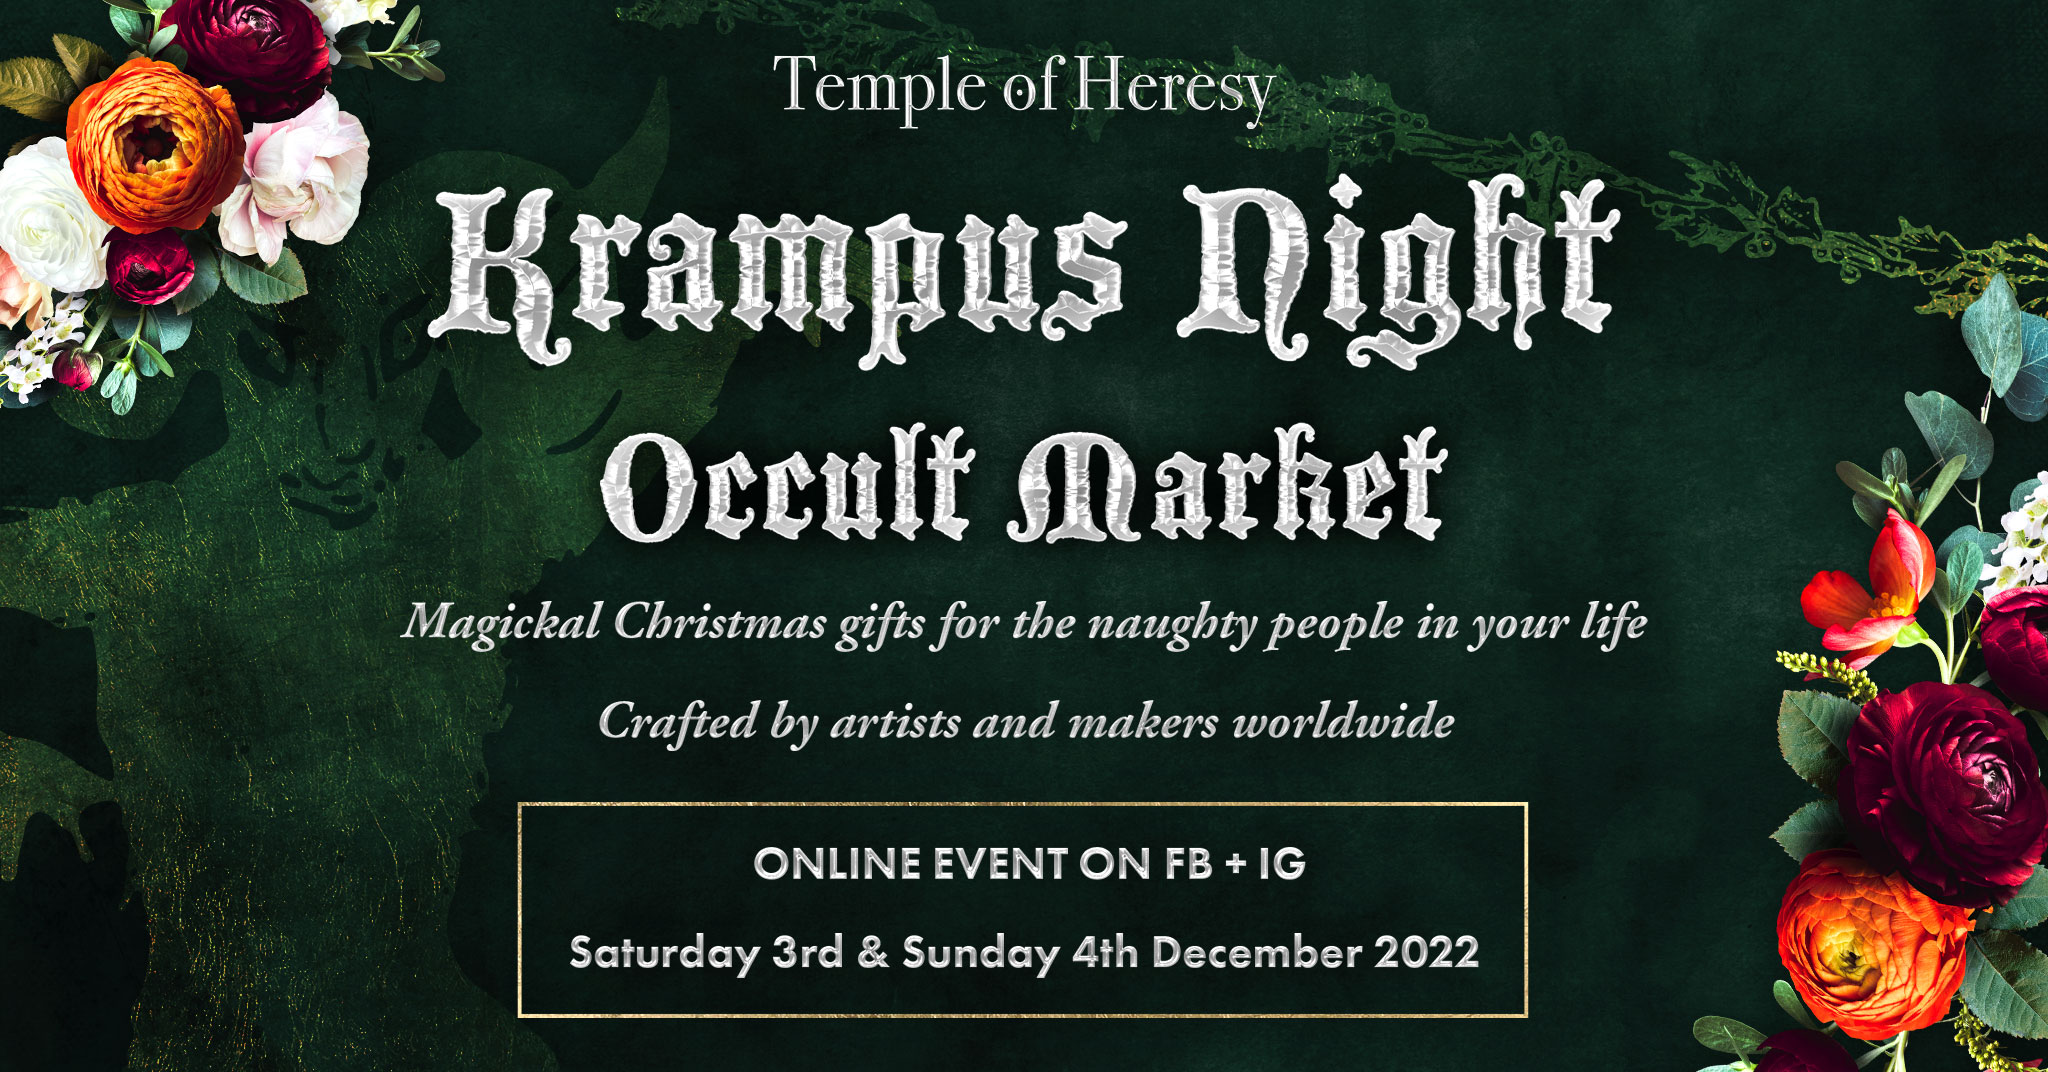 Krampus Night Occult Market ad.